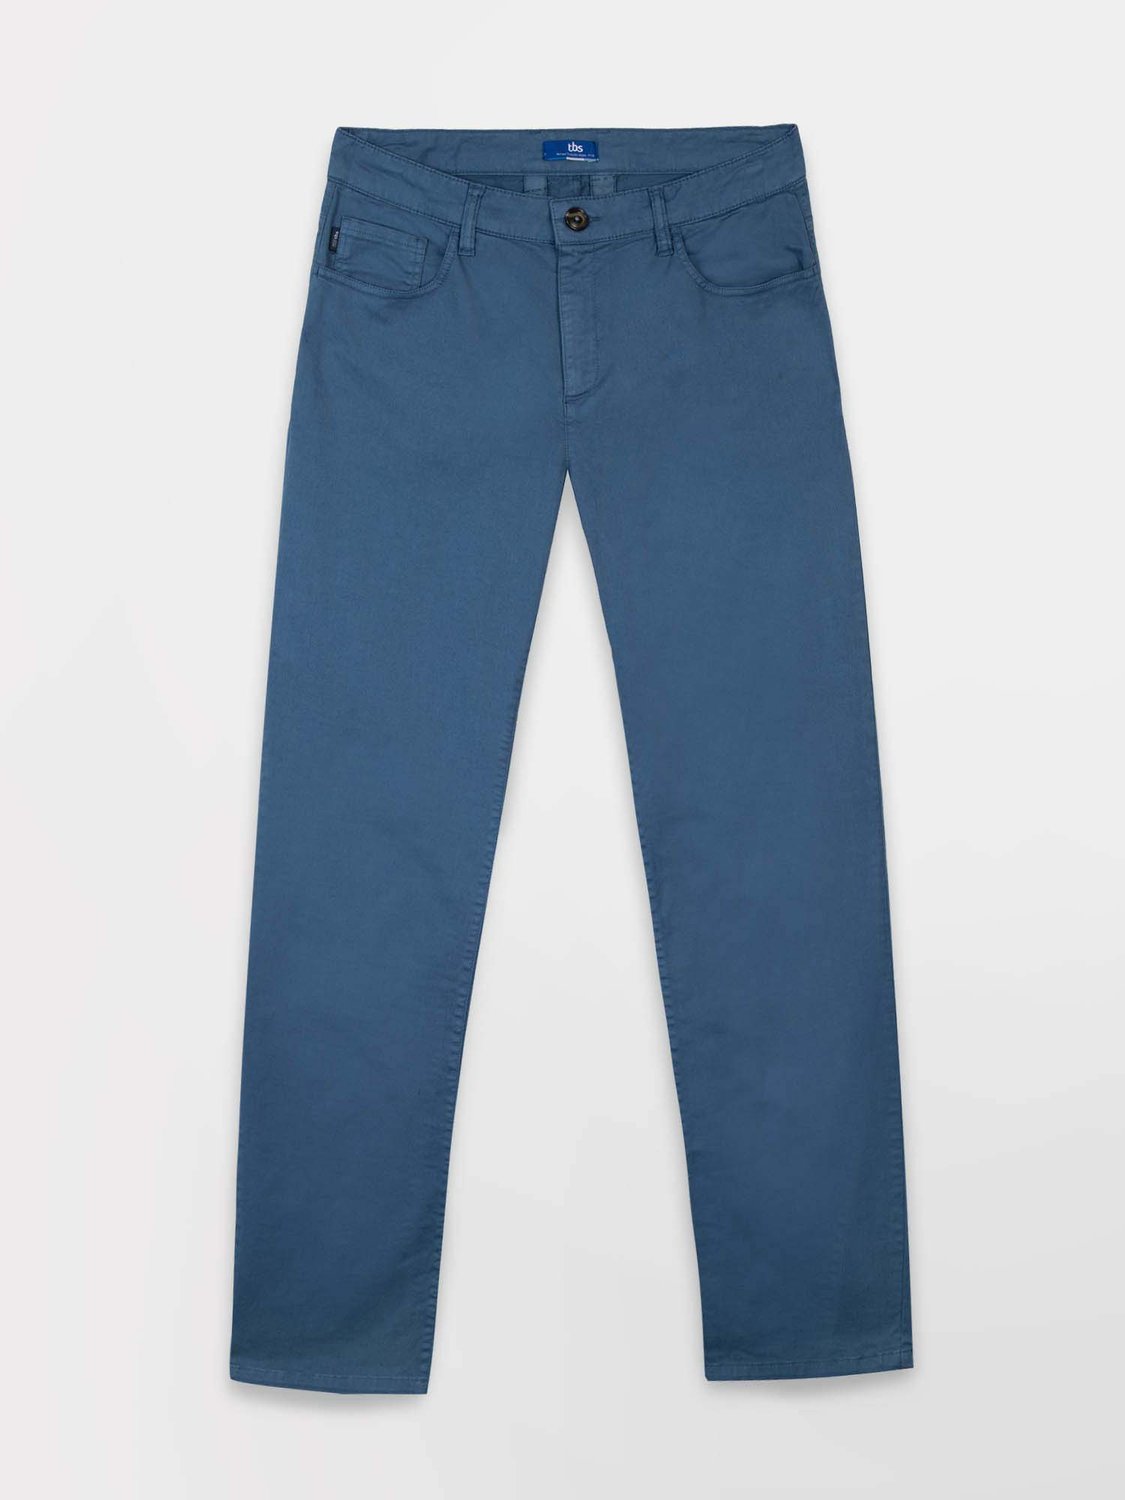 Pantalon Homme Coton Stretch Bleu